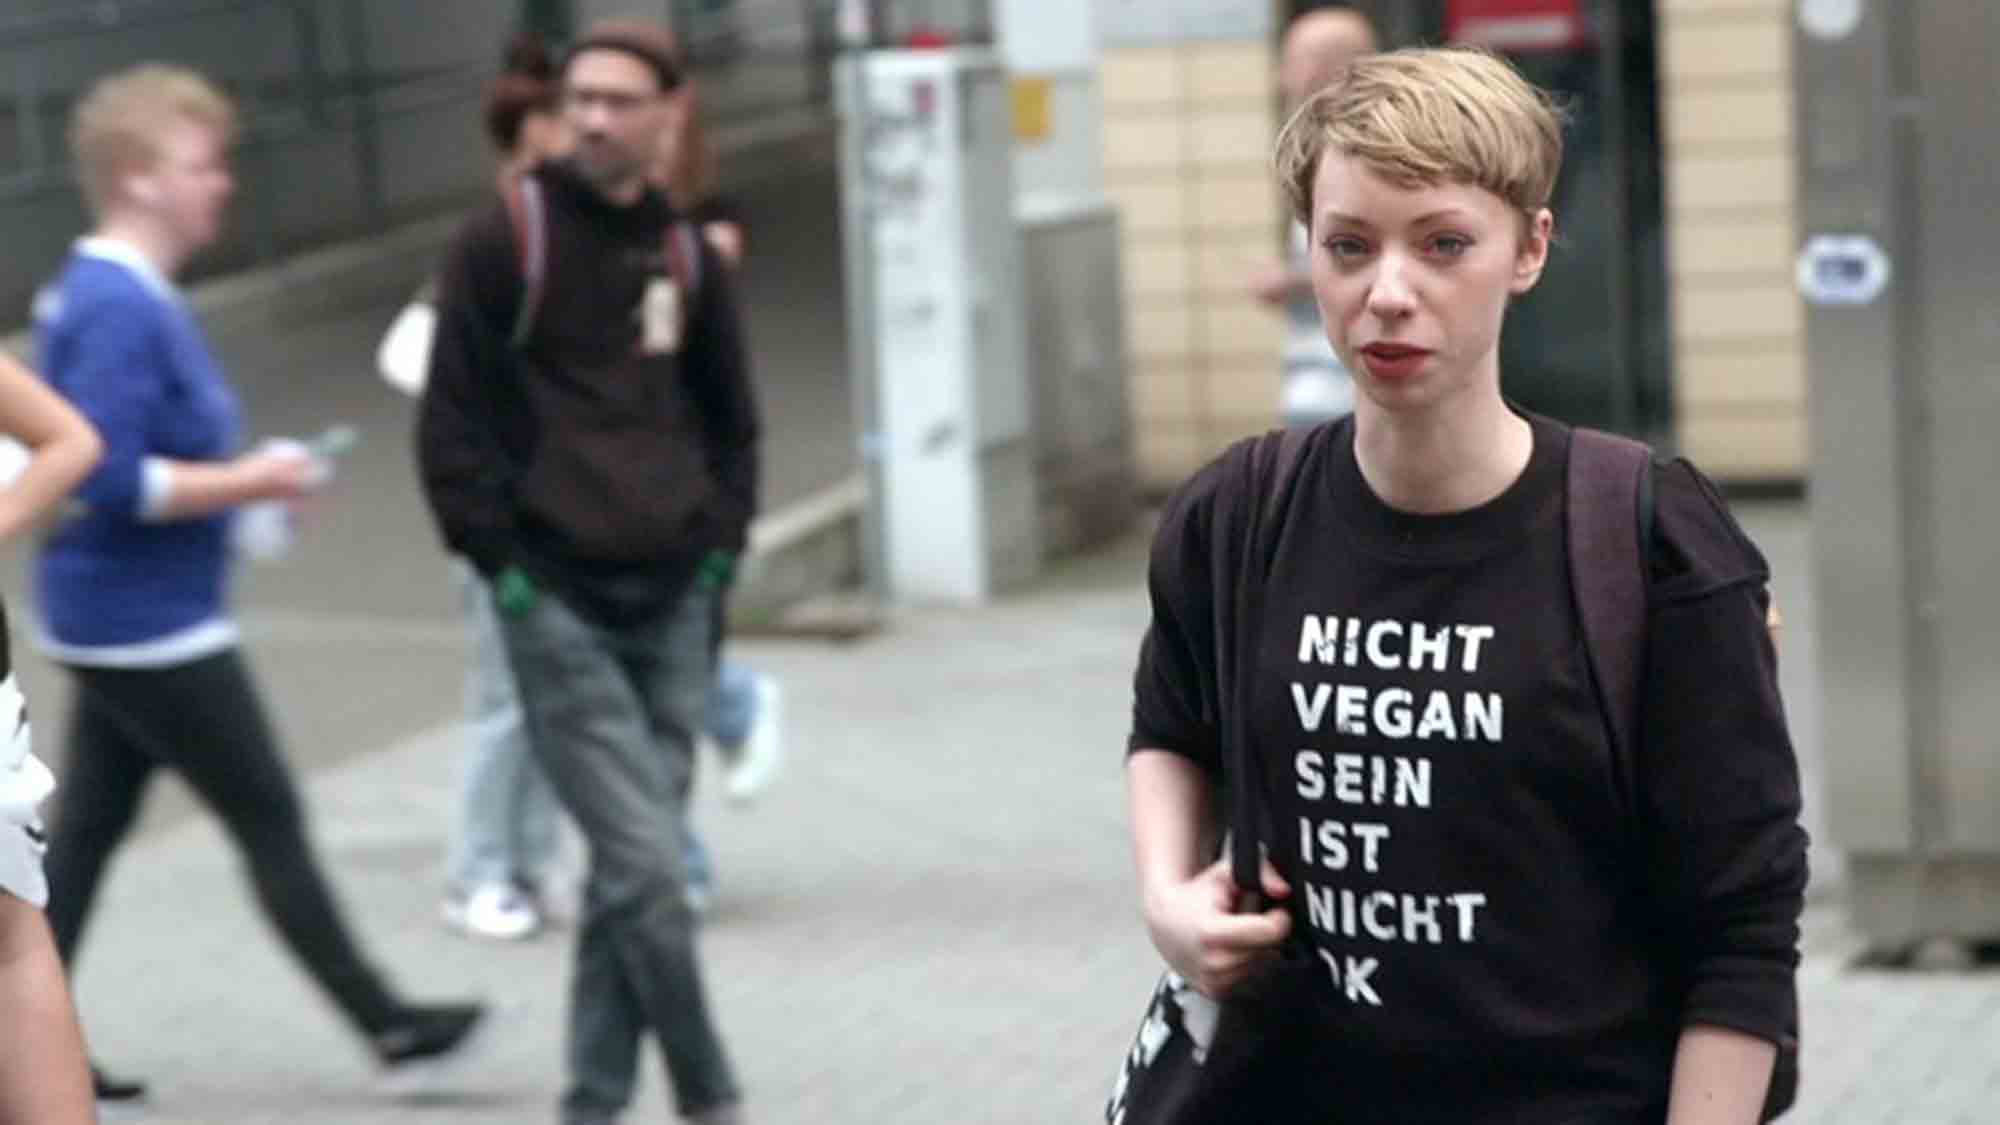 Vegan vs. Fleisch – MDR Reihe »Exactly« fragt, warum der Streit ums Essen eskaliert